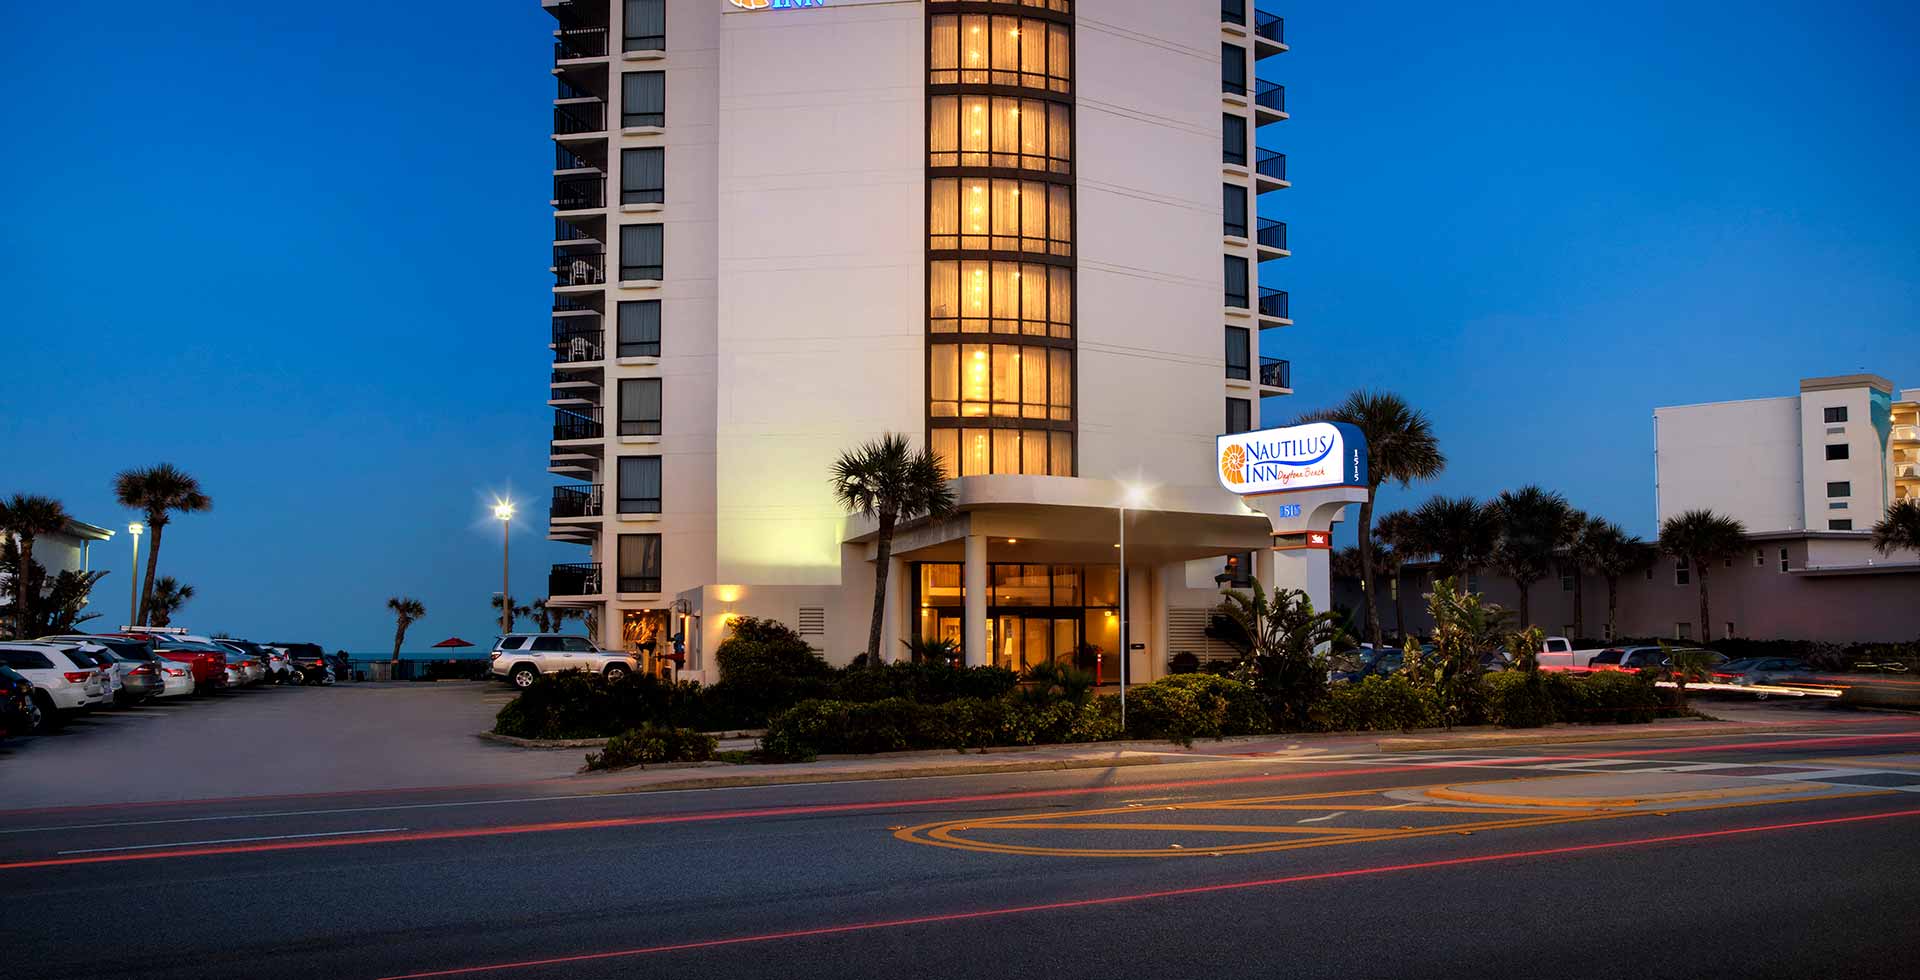 Street view of the Nautilus Inn on Daytona Beach